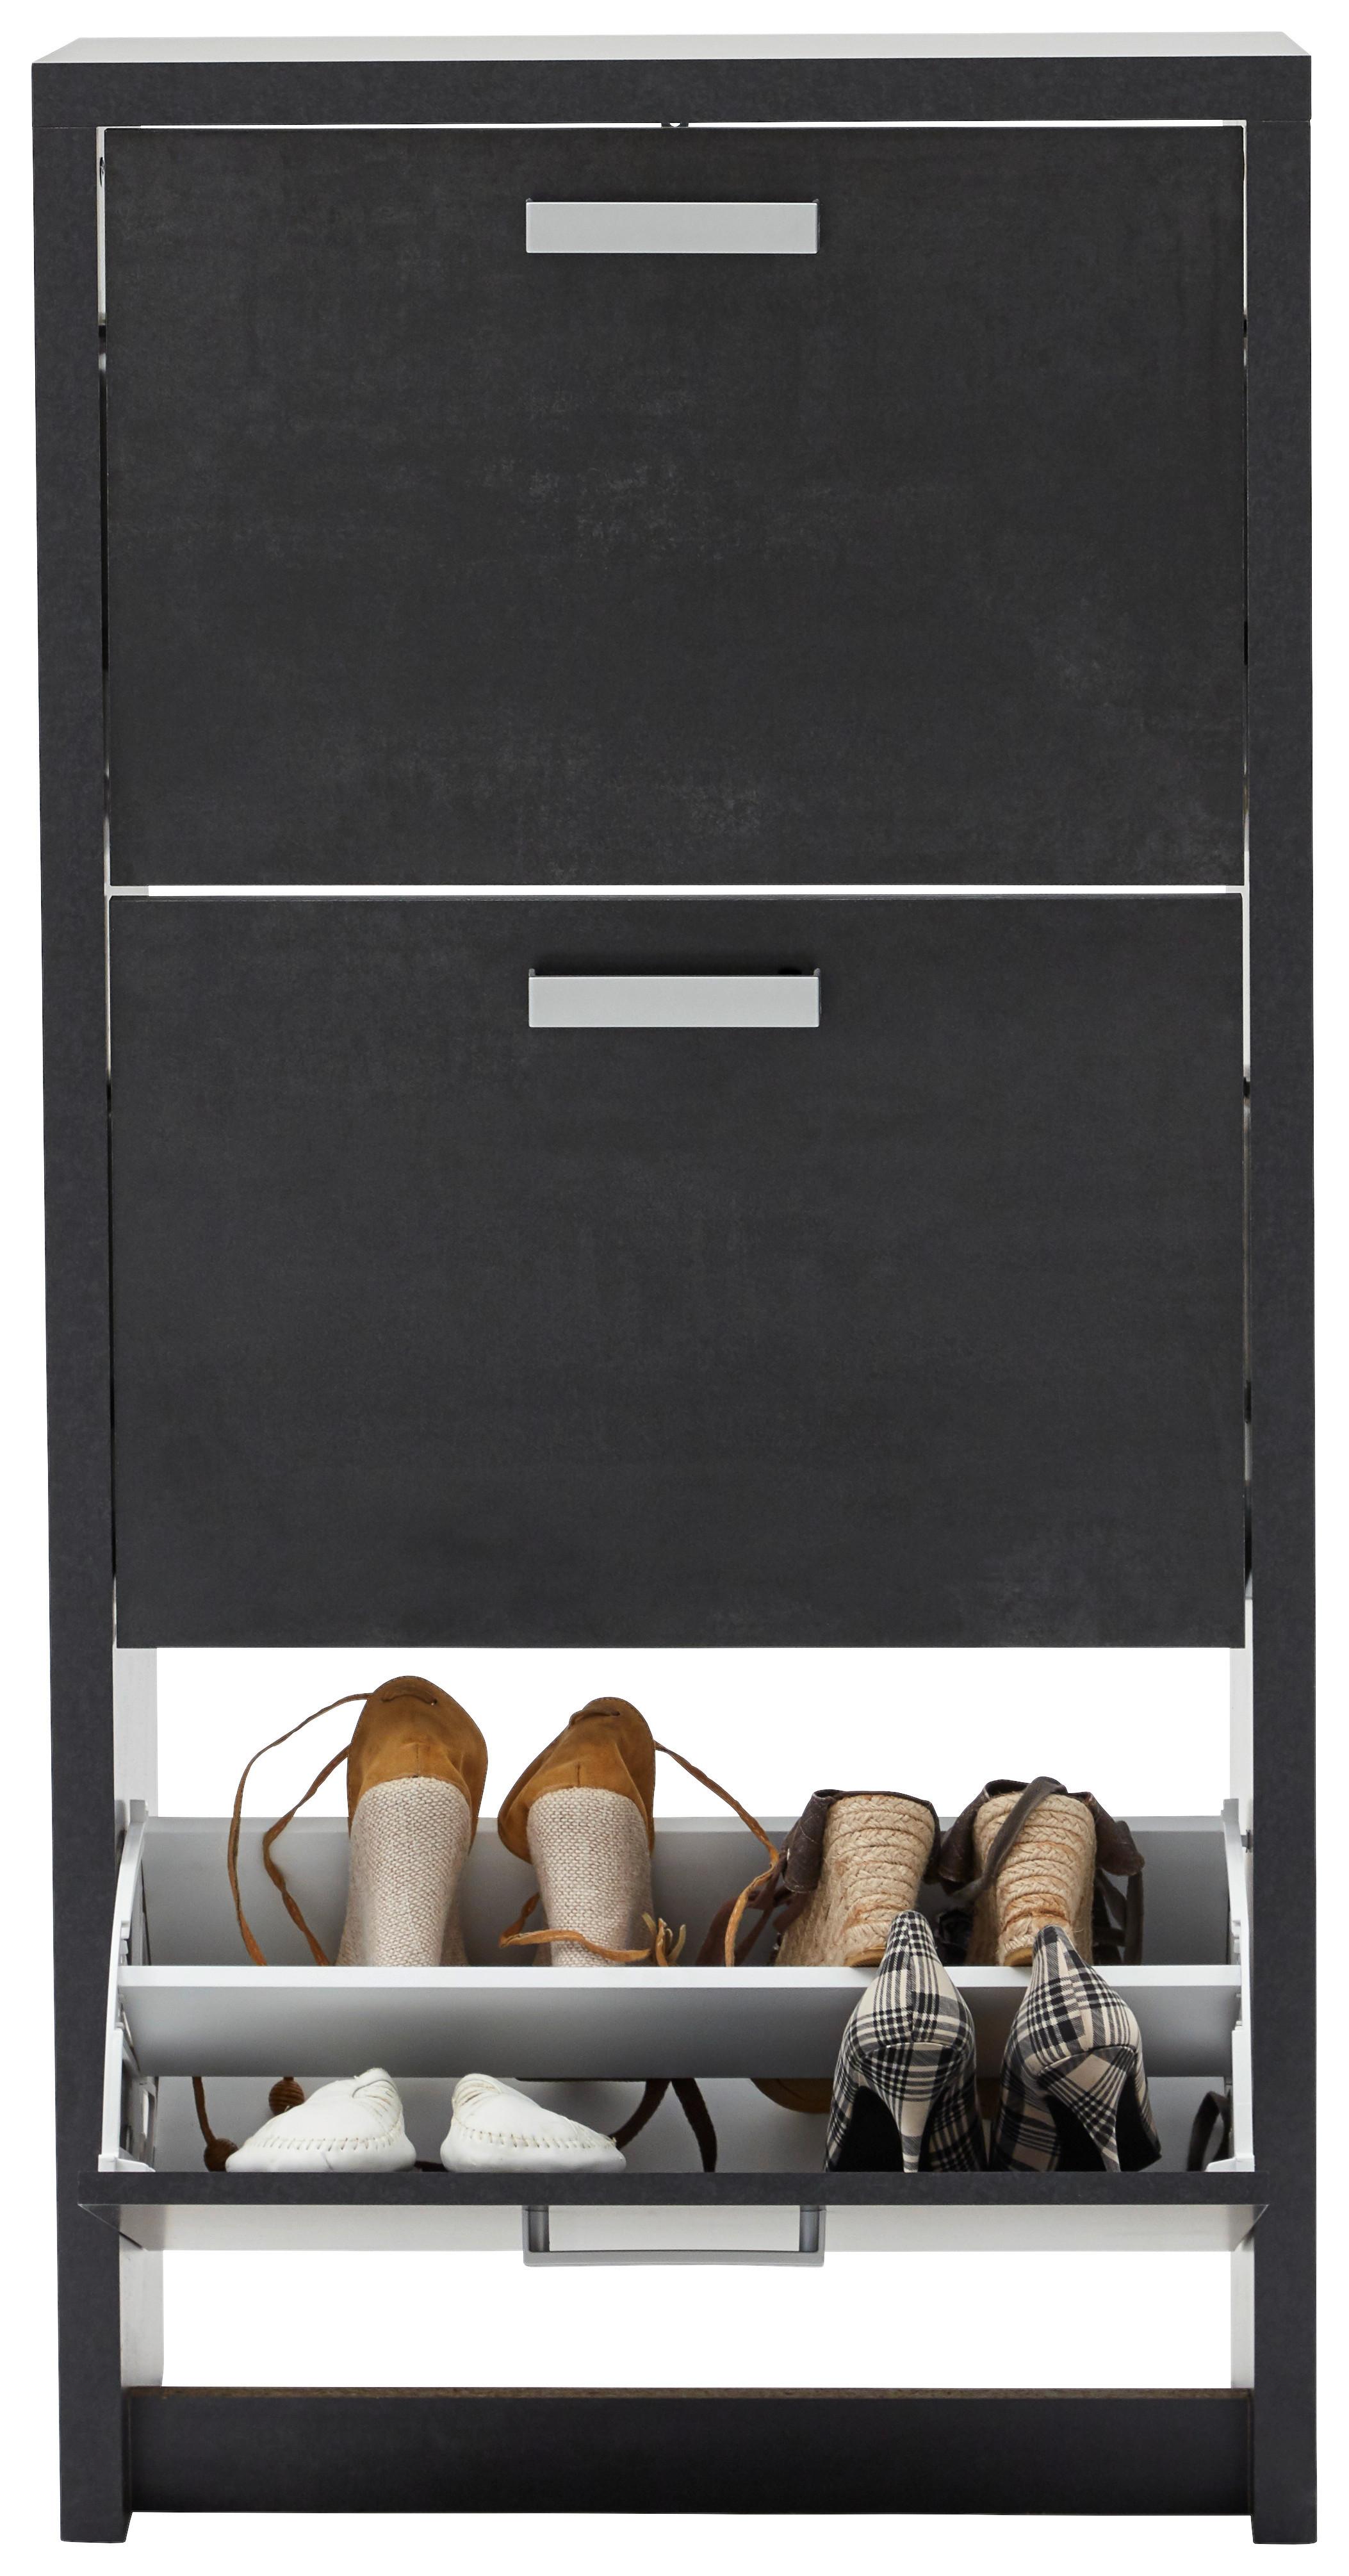 Omara Z Loputami Za Čevlje Big 3 - aluminij/črna, Moderno, umetna masa/leseni material (64/125/24cm) - Modern Living